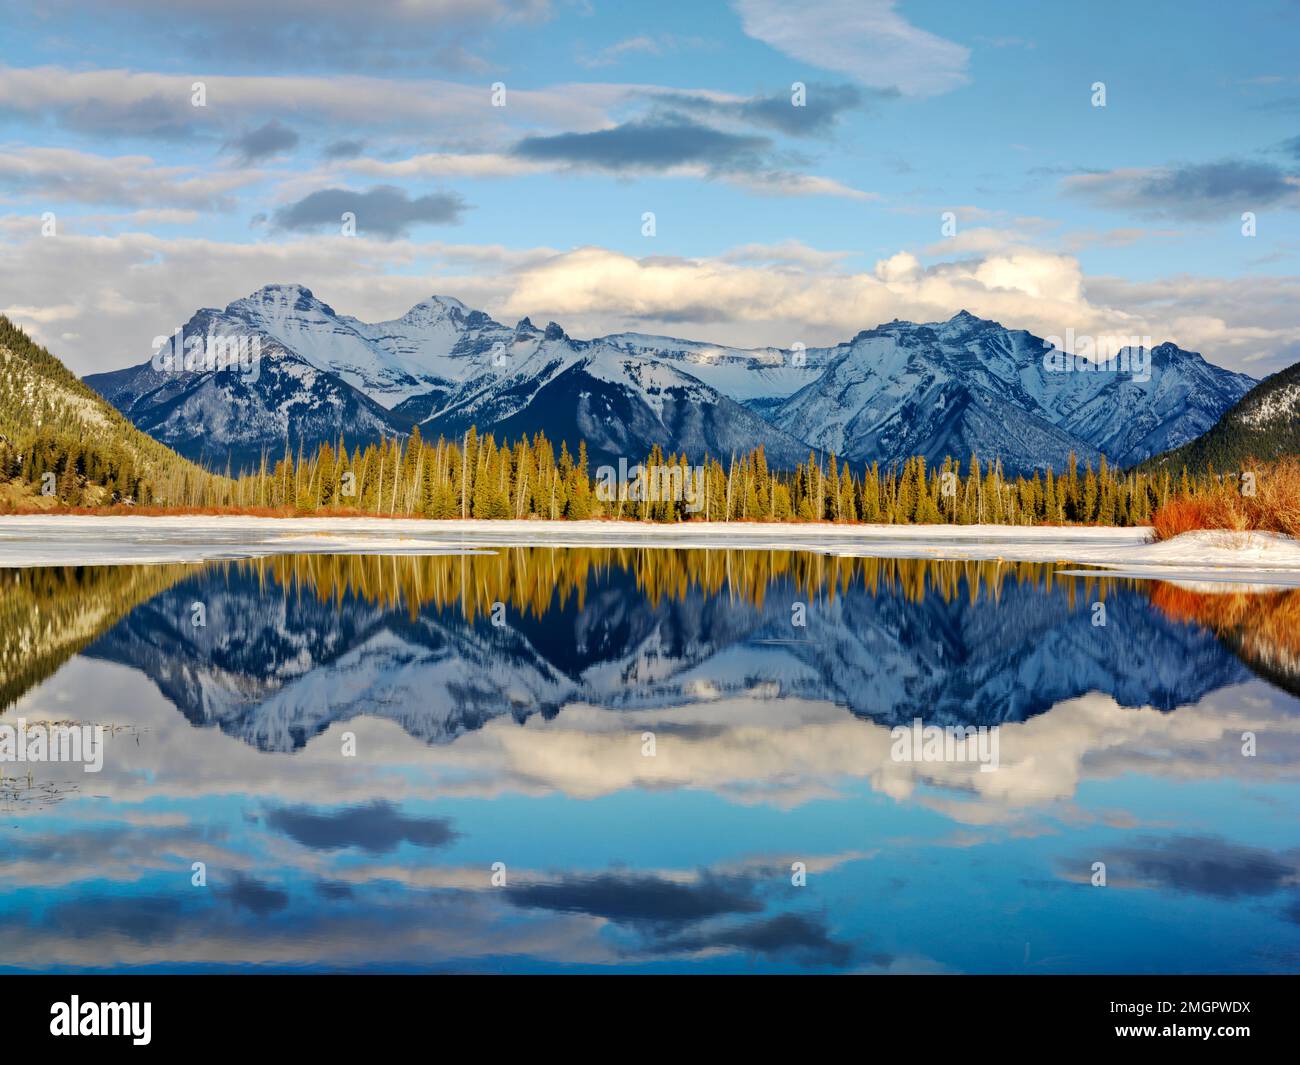 Canada, Alberta, parc national Banff, lacs Vermilion, chaîne de montagnes Fairholme reflétant dans le lac en hiver Banque D'Images